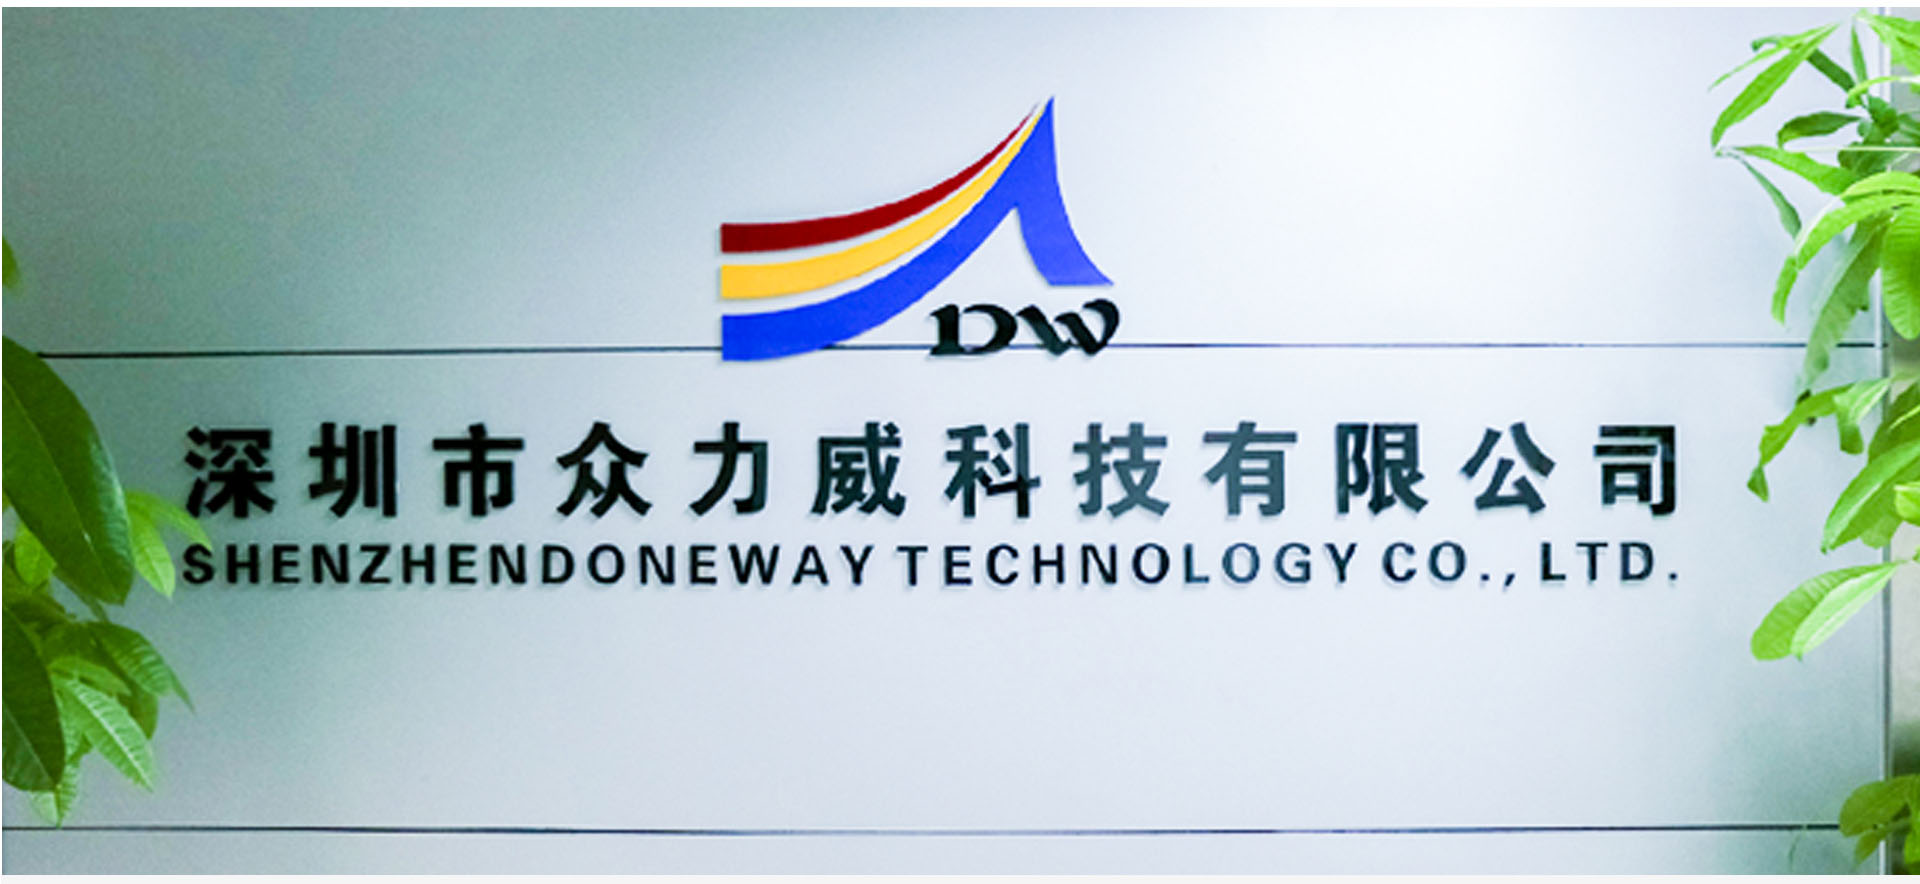 众力威科技，深圳市众力威科技有限公司，众力威科技武汉分公司，充满活力和不断创新的团队